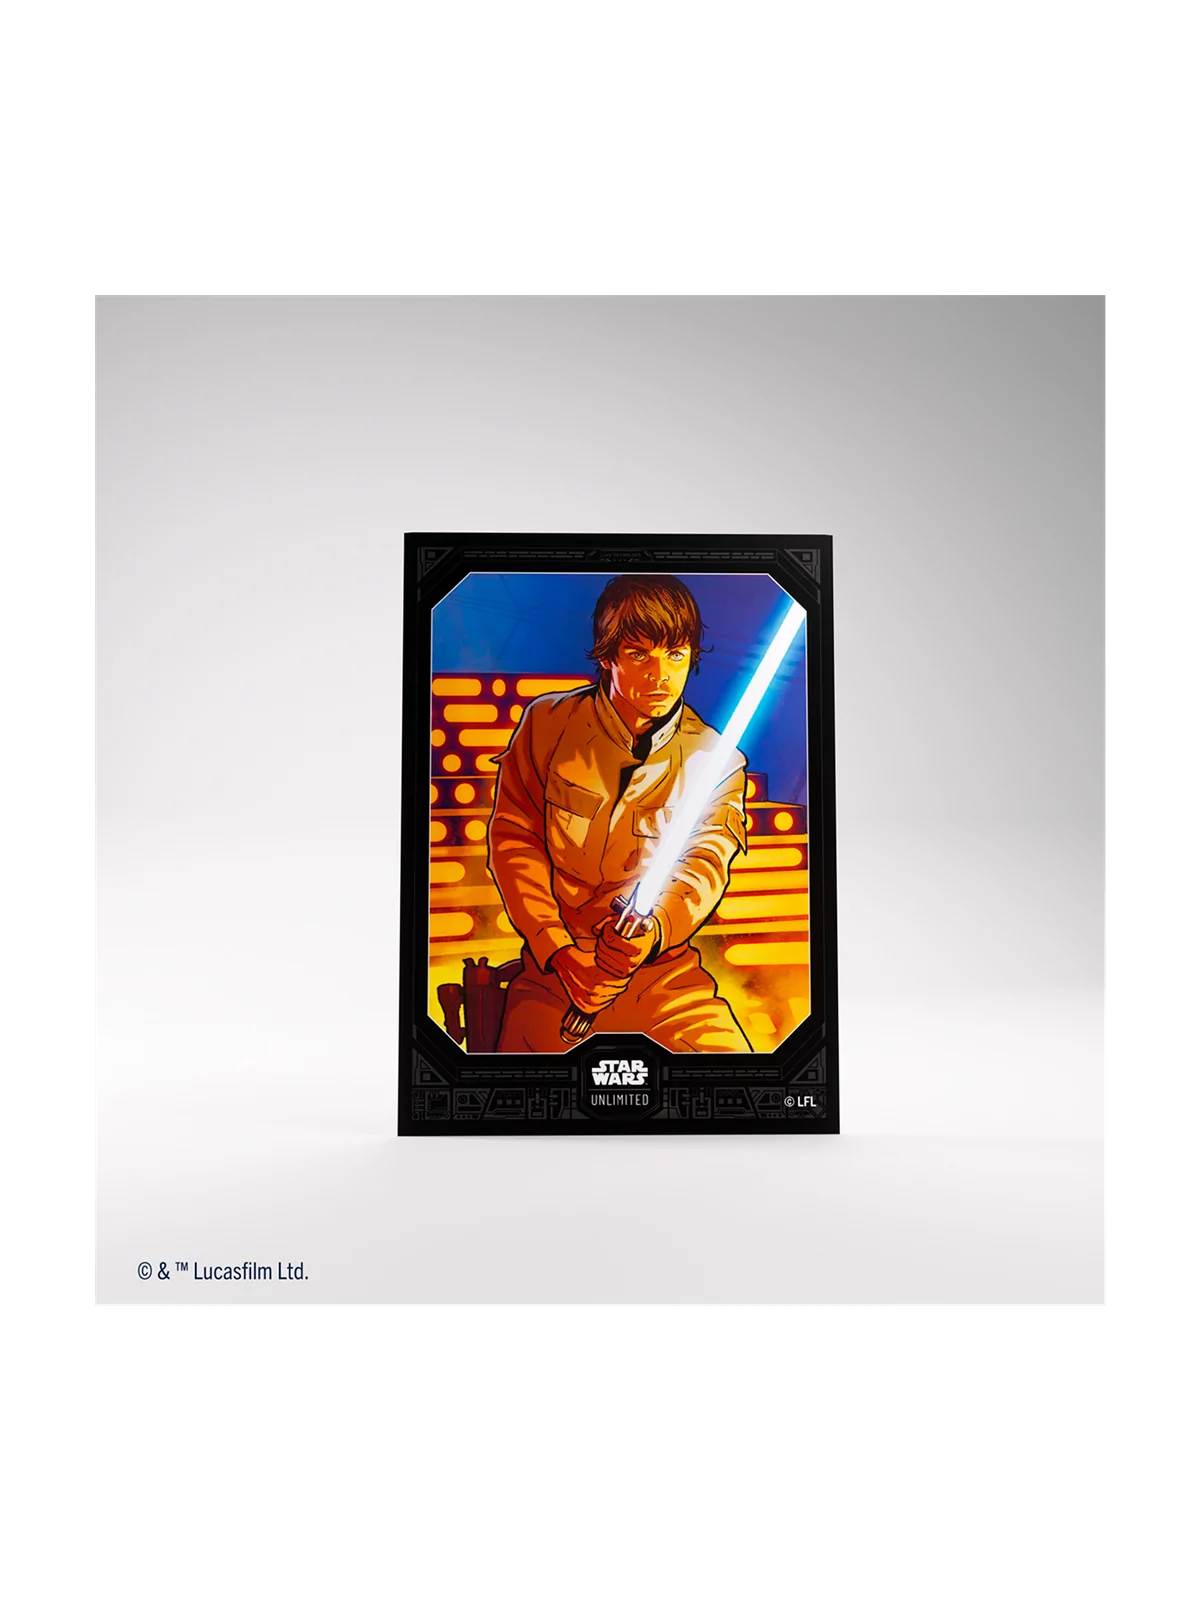 Comprar Star Wars Unlimited: Art Sleeves Luke Skywalker barato al mejo